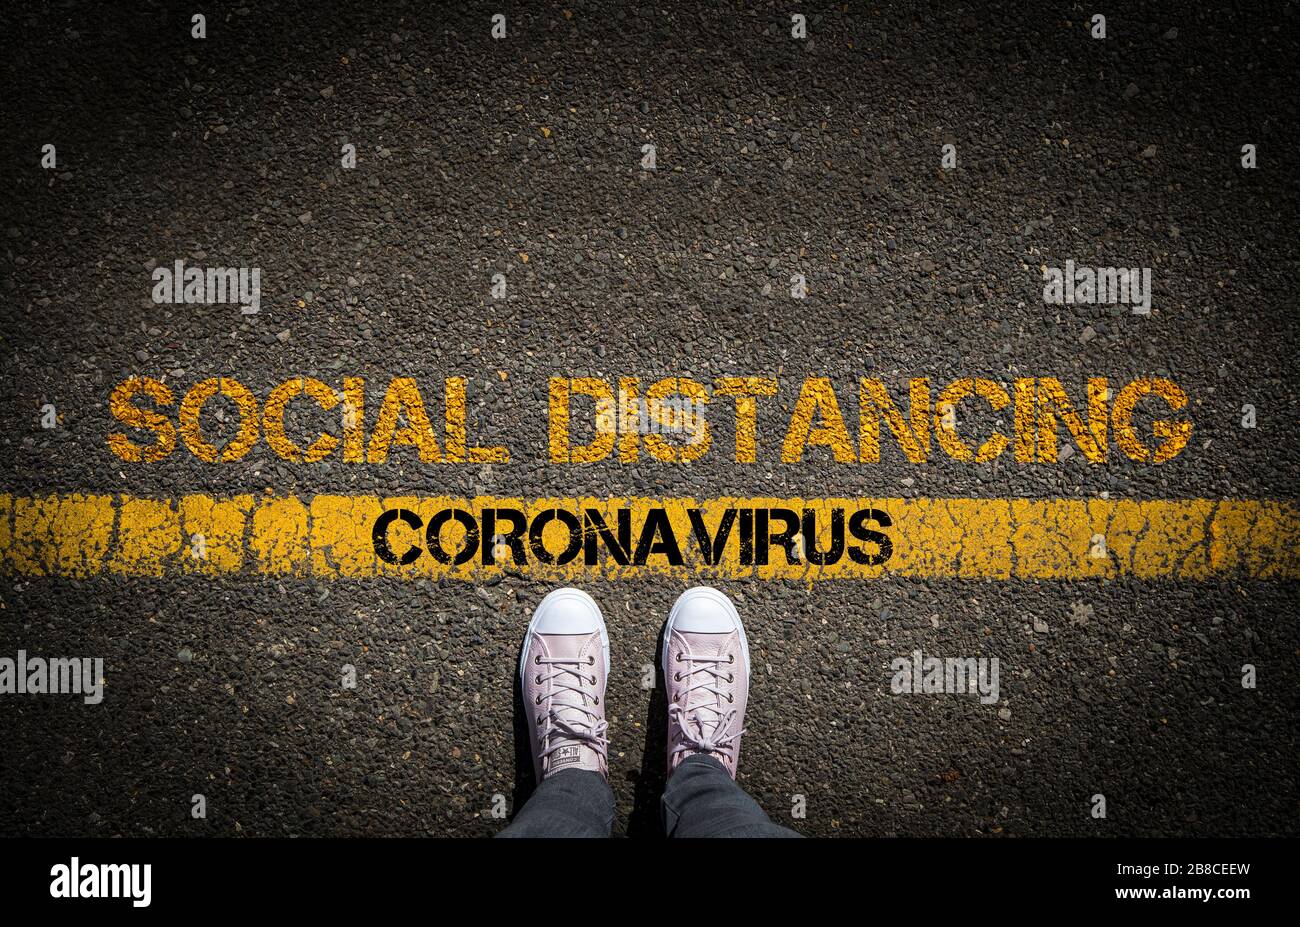 Distanciamiento social para reducir la propagación del coronavirus, imagen conceptual. Foto de stock